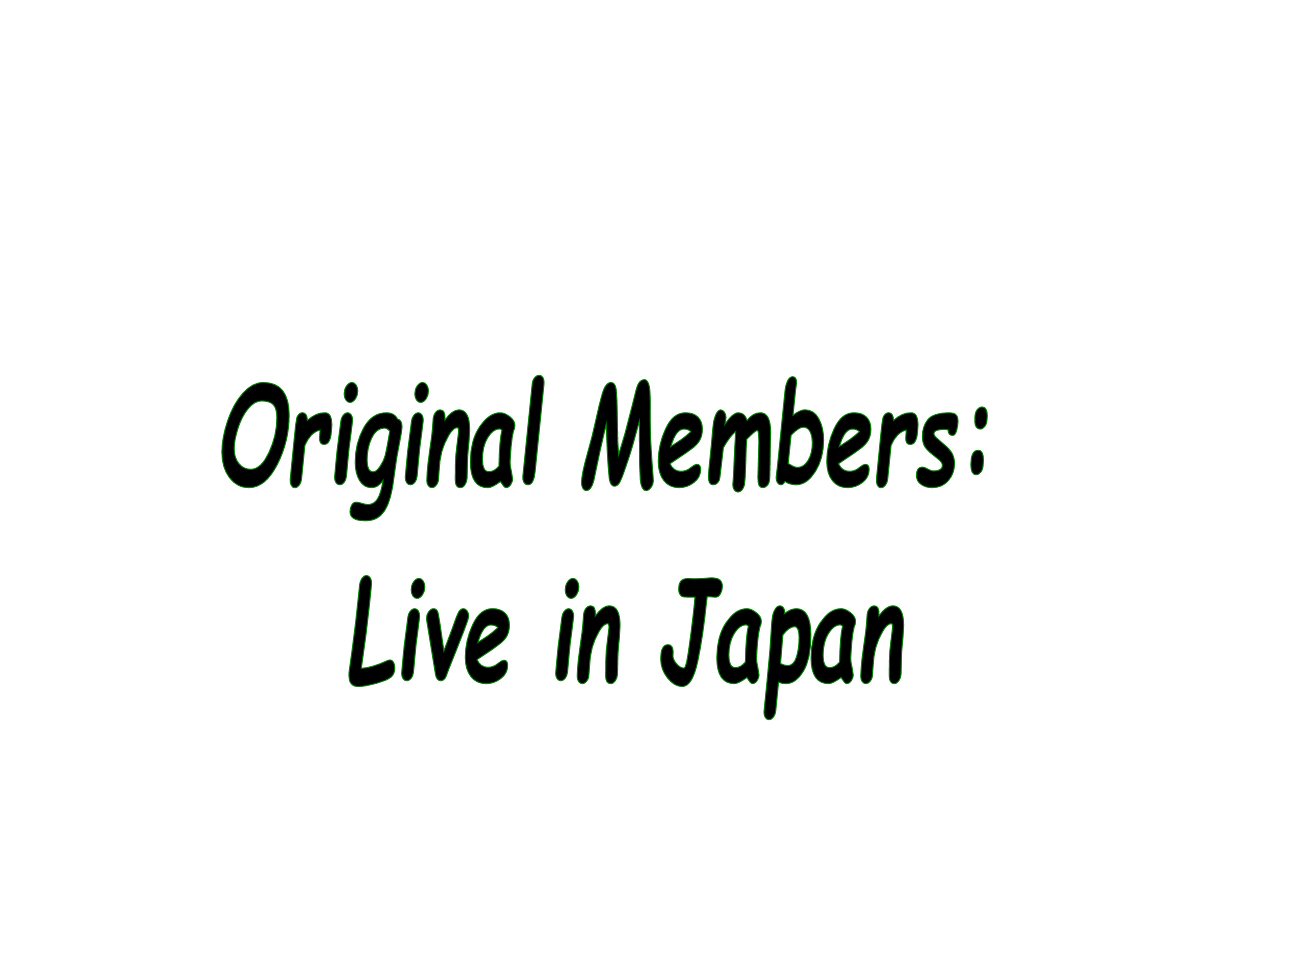 Original Members: Live in Japan